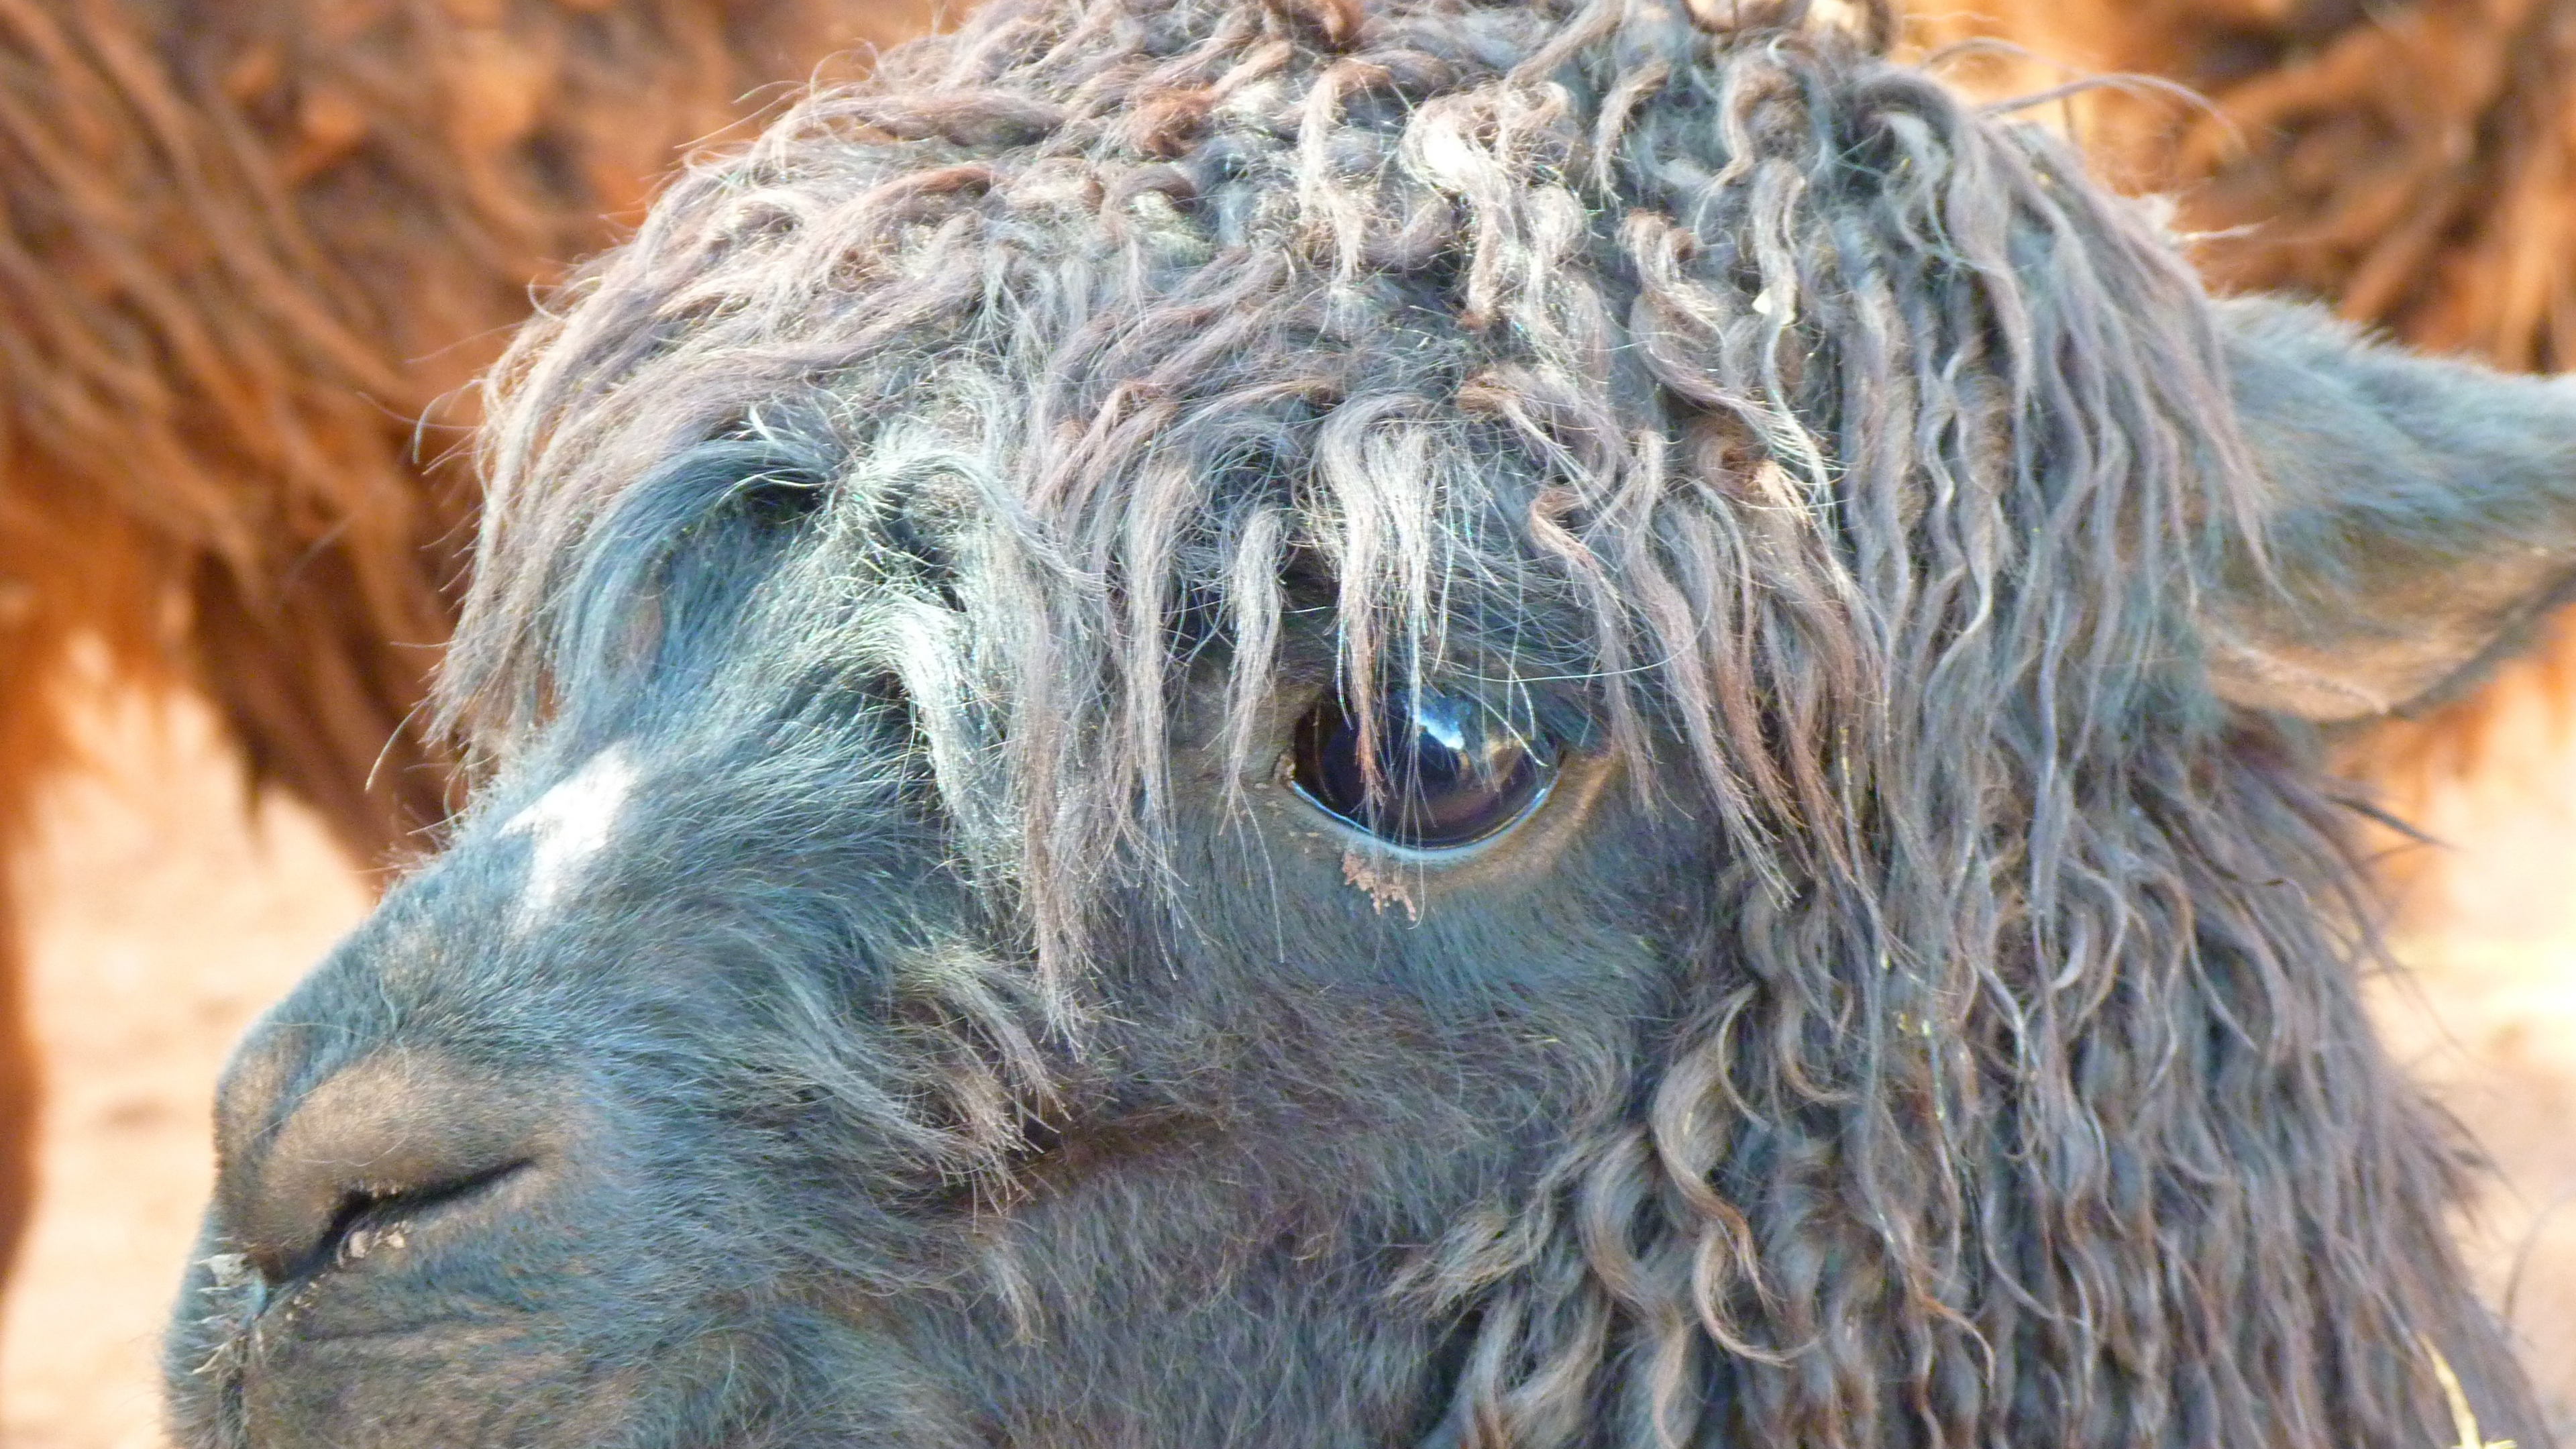 alpaca llama face wool 4k 1542242410 - alpaca, llama, face, wool 4k - llama, Face, alpaca